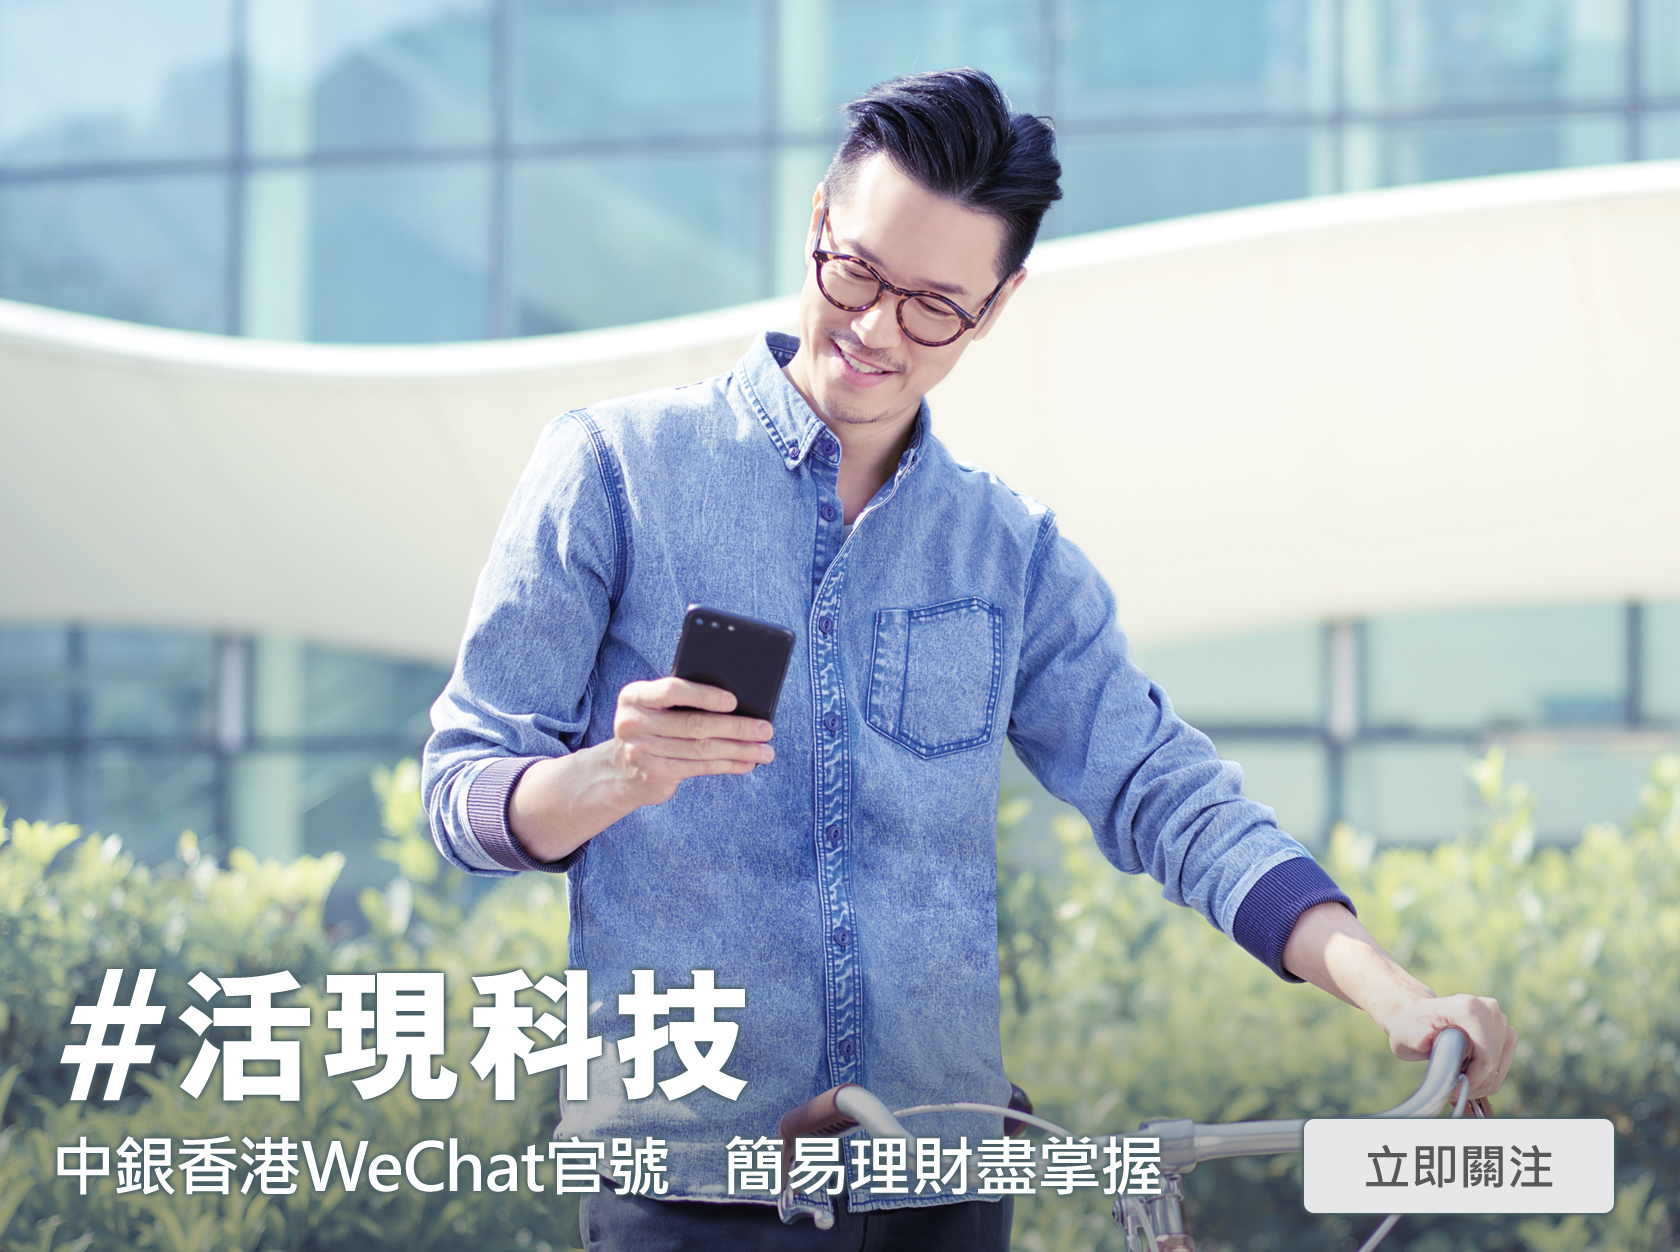 活現科技 - 中銀香港WeChat官號 簡易理財盡掌握技